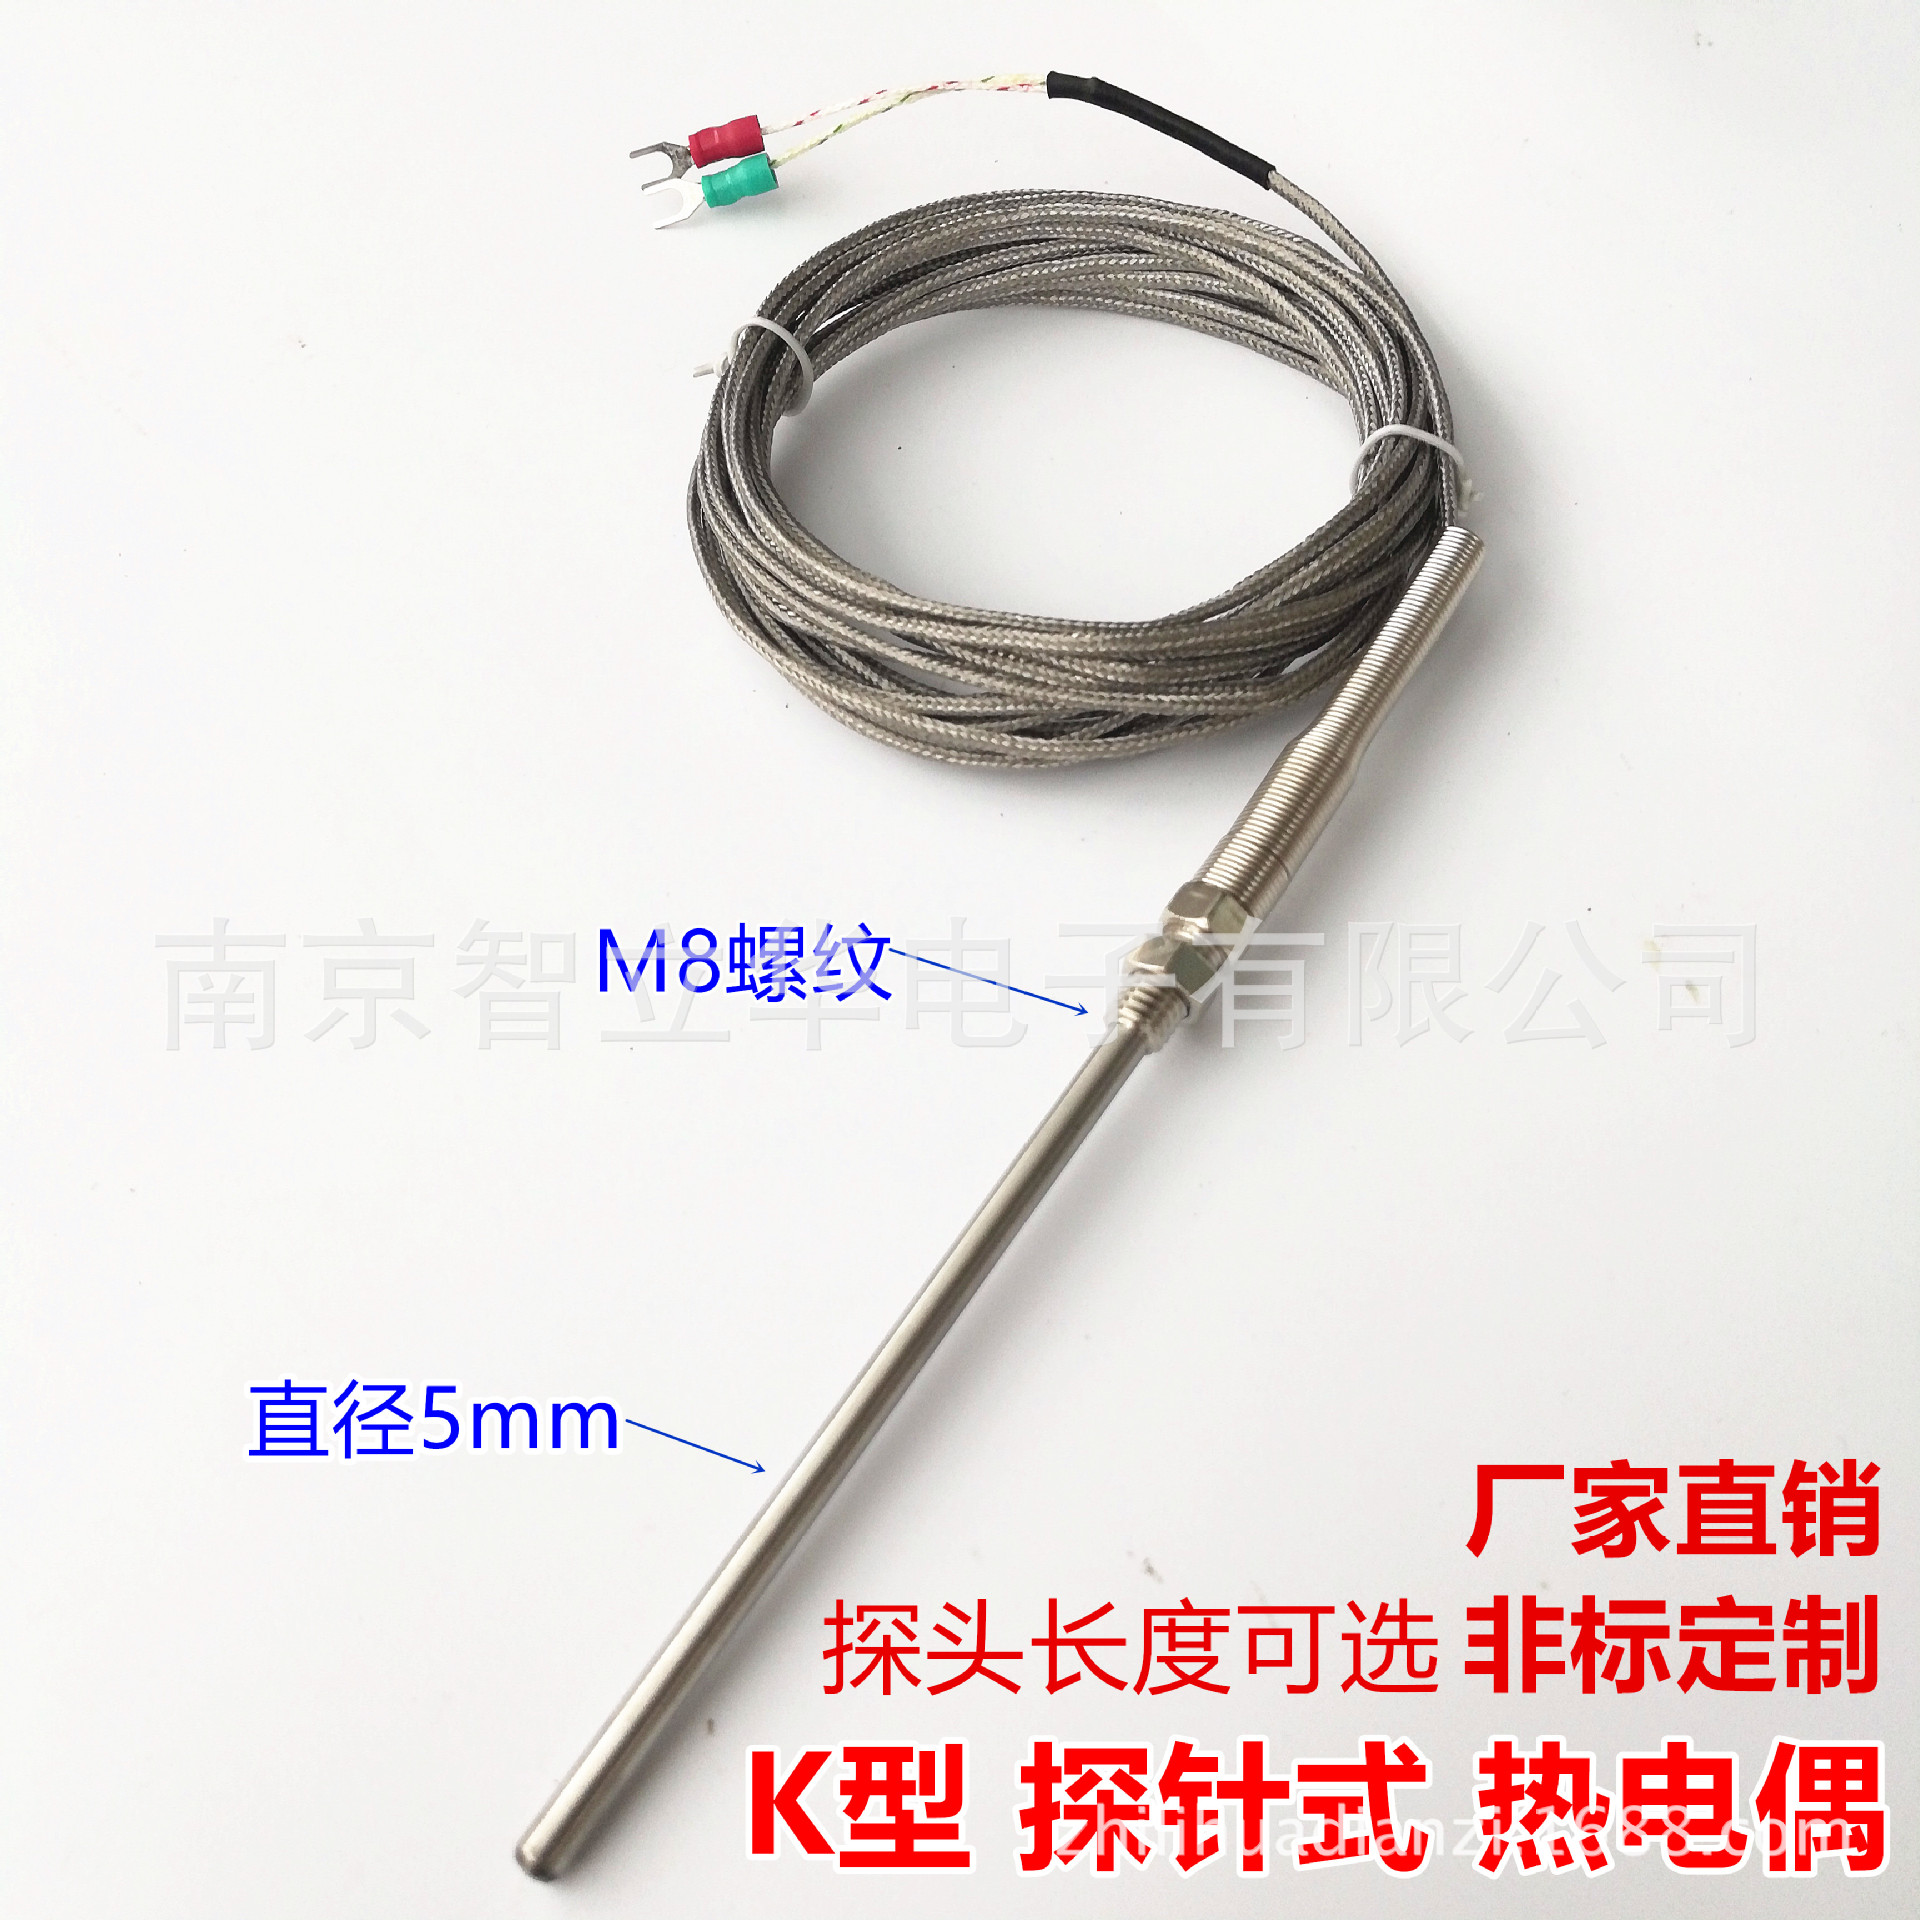 K型热电偶 探针式 电偶感温线 仿进口 探头温度传感器 M8螺纹